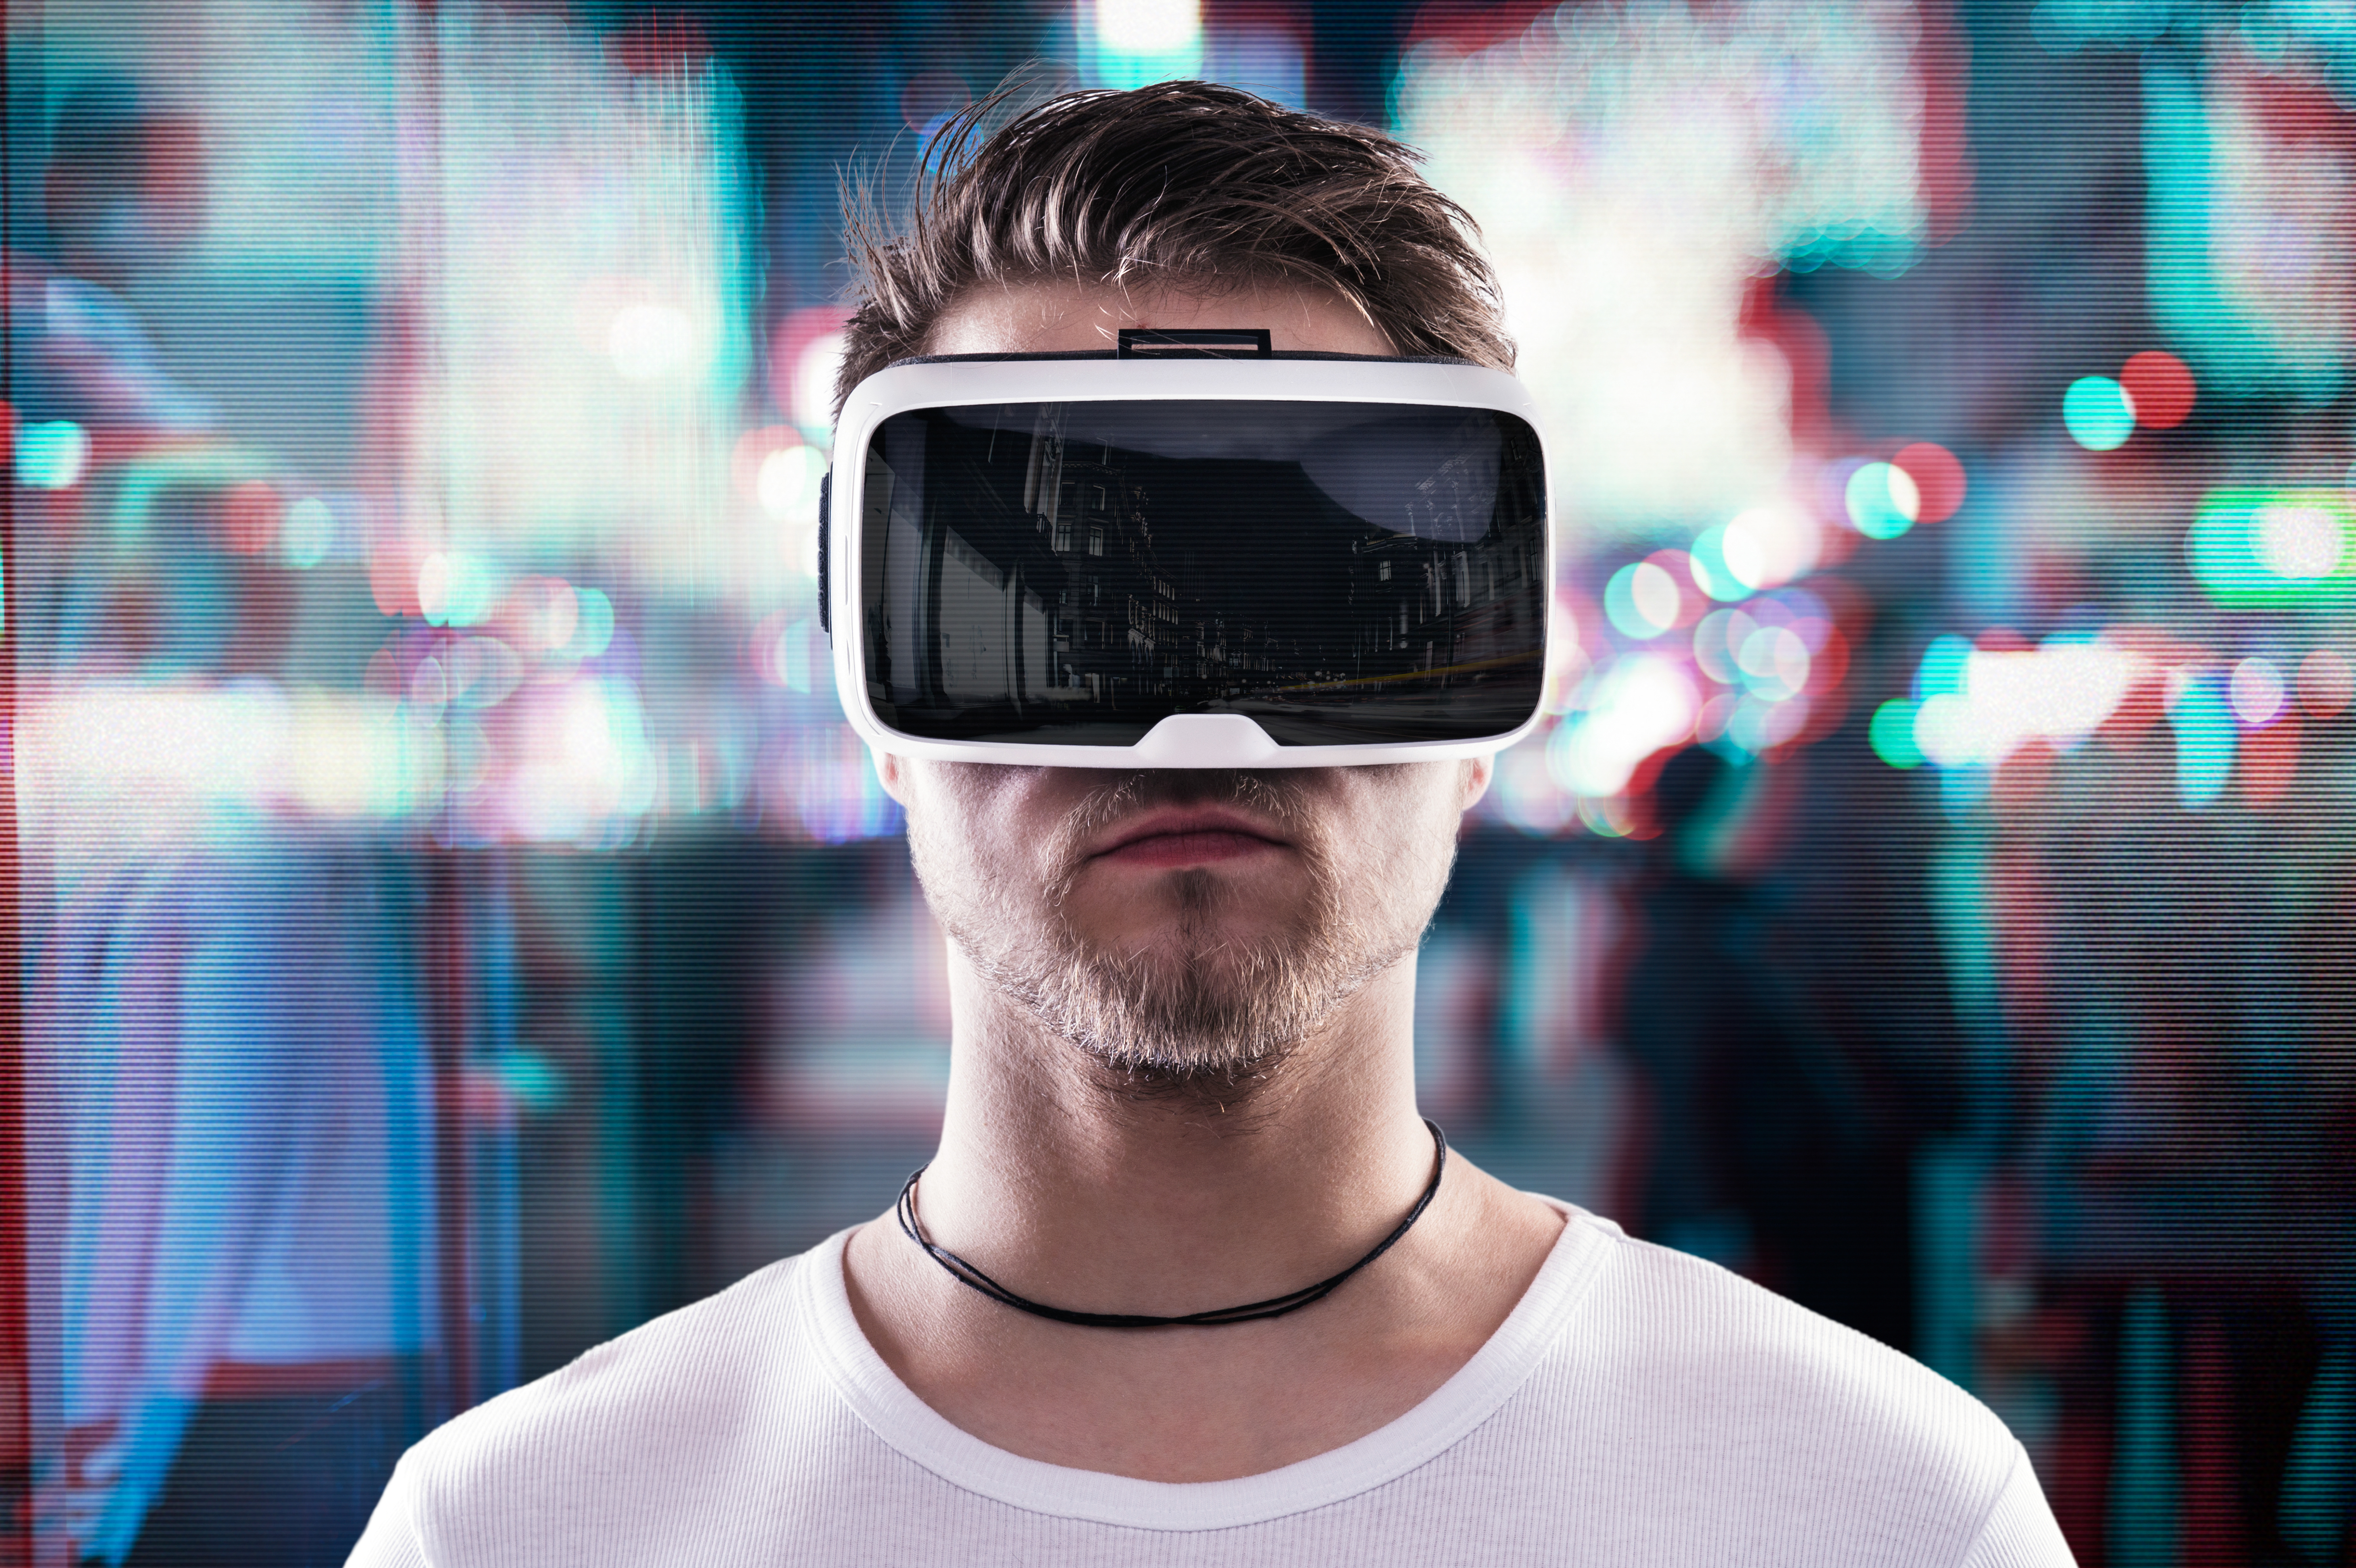 Картинка очки реальности. Виртуальная реальность (Virtual reality, VR). Визуальная реальность. Очки виртуальной реальности на человеке. Парень в очках виртуальной реальности.